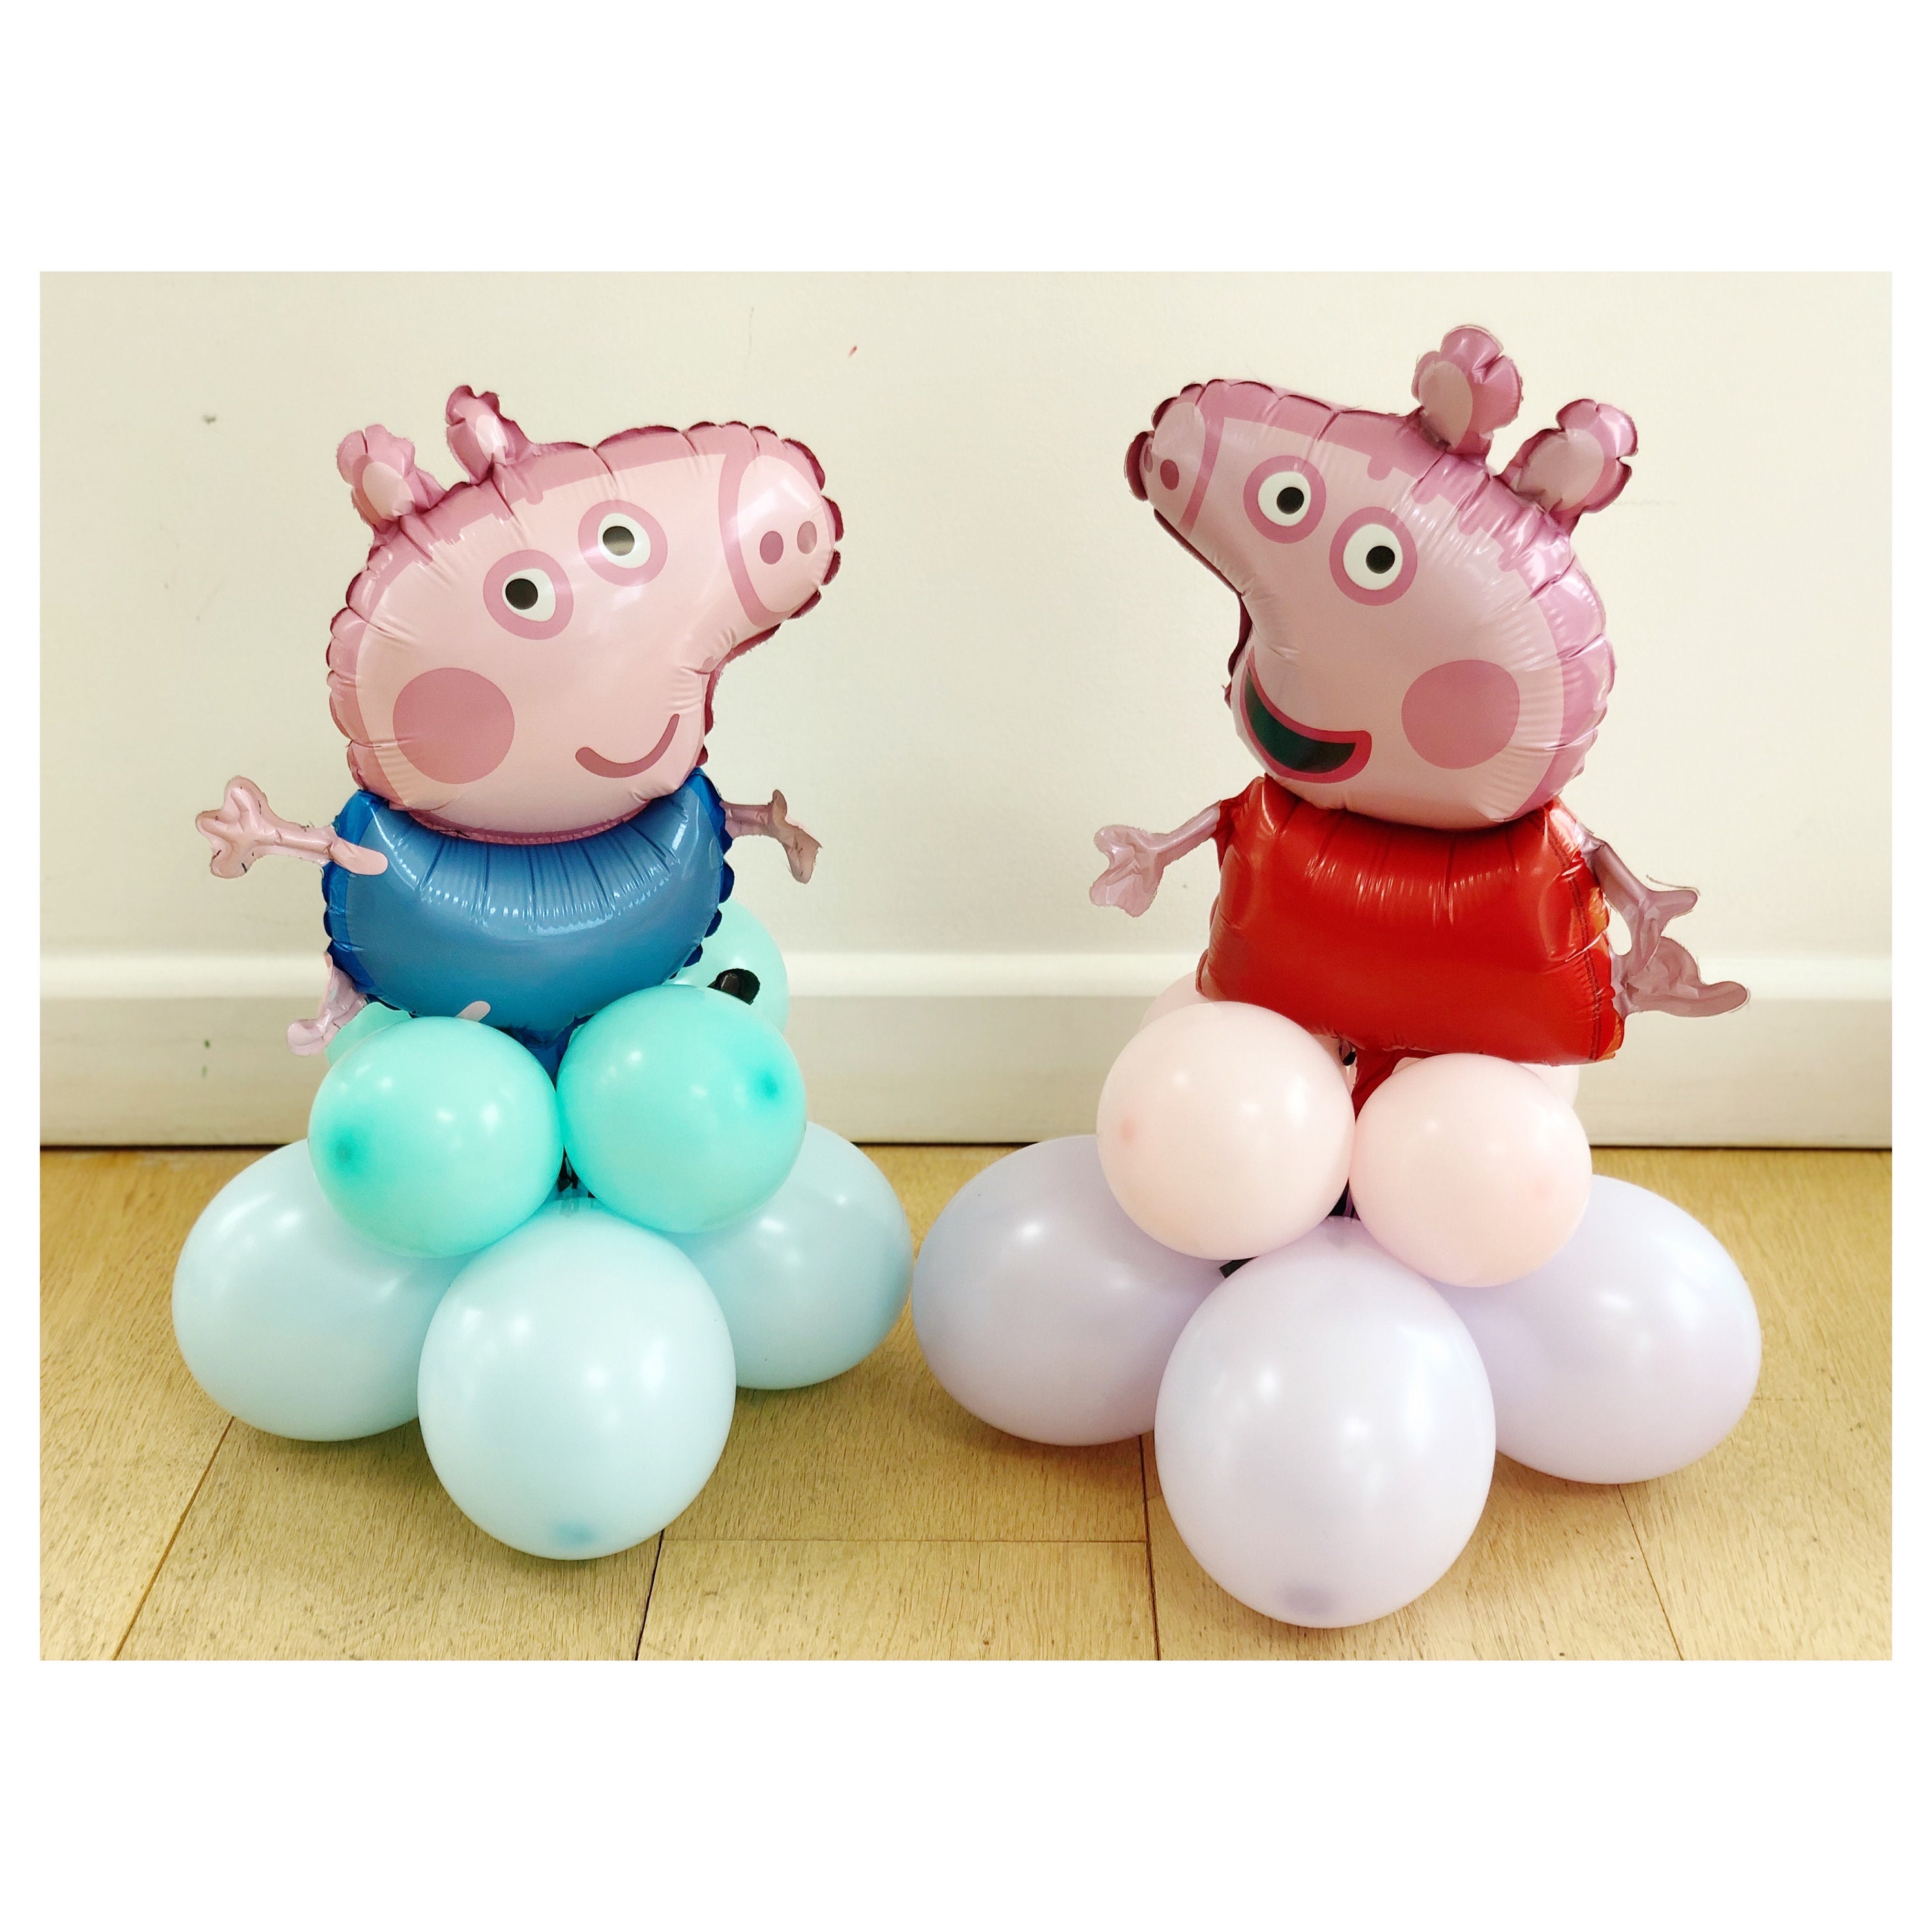 Sculture di palloncini fai da te Mini Peppa Pig, Peppa Pig o George Pig,  decorazioni di palloncini a tema Peppa Pig, decorazioni di compleanno di Peppa  Pig -  Italia